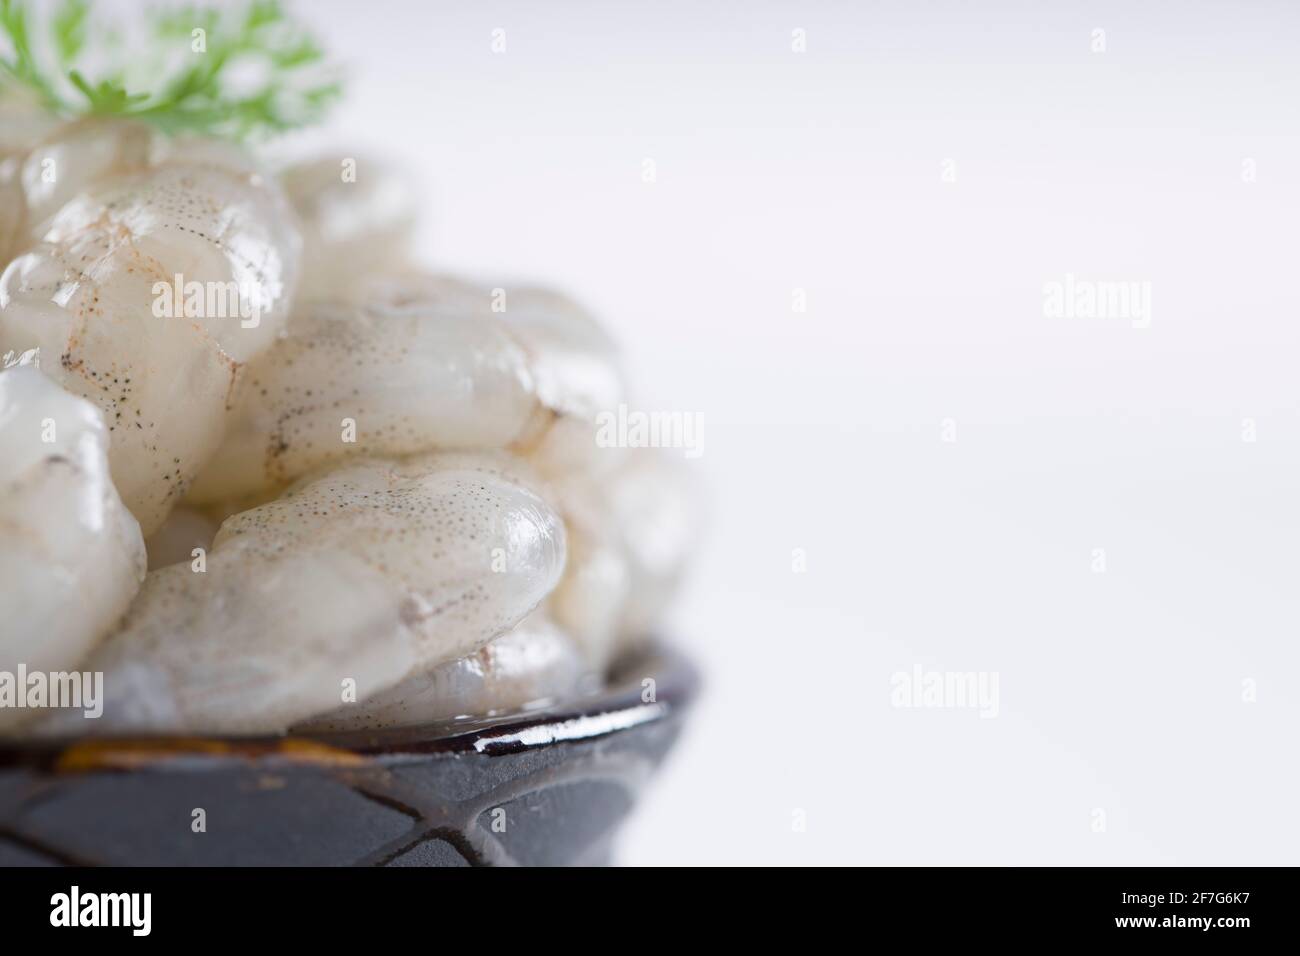 Crevettes pelées crues ou crevettes disposées en céramique noire petit pot et garni de feuilles de coriandre qui est prête pour cuisiner, placé sur une texture blanche Banque D'Images